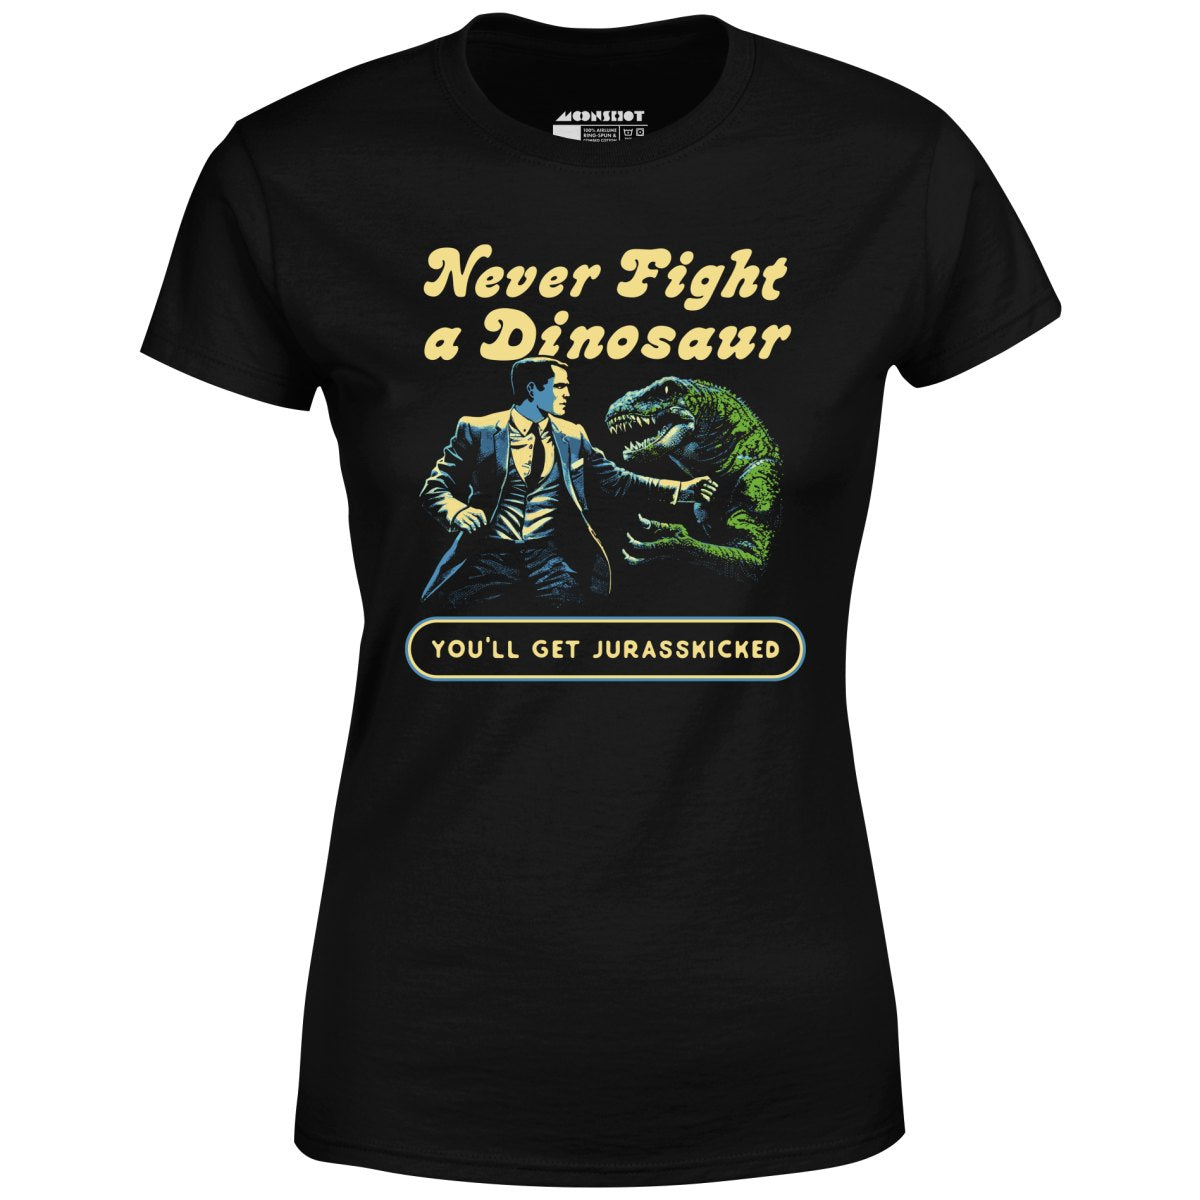 Never Fight a Dinosaur - Women's T-Shirt